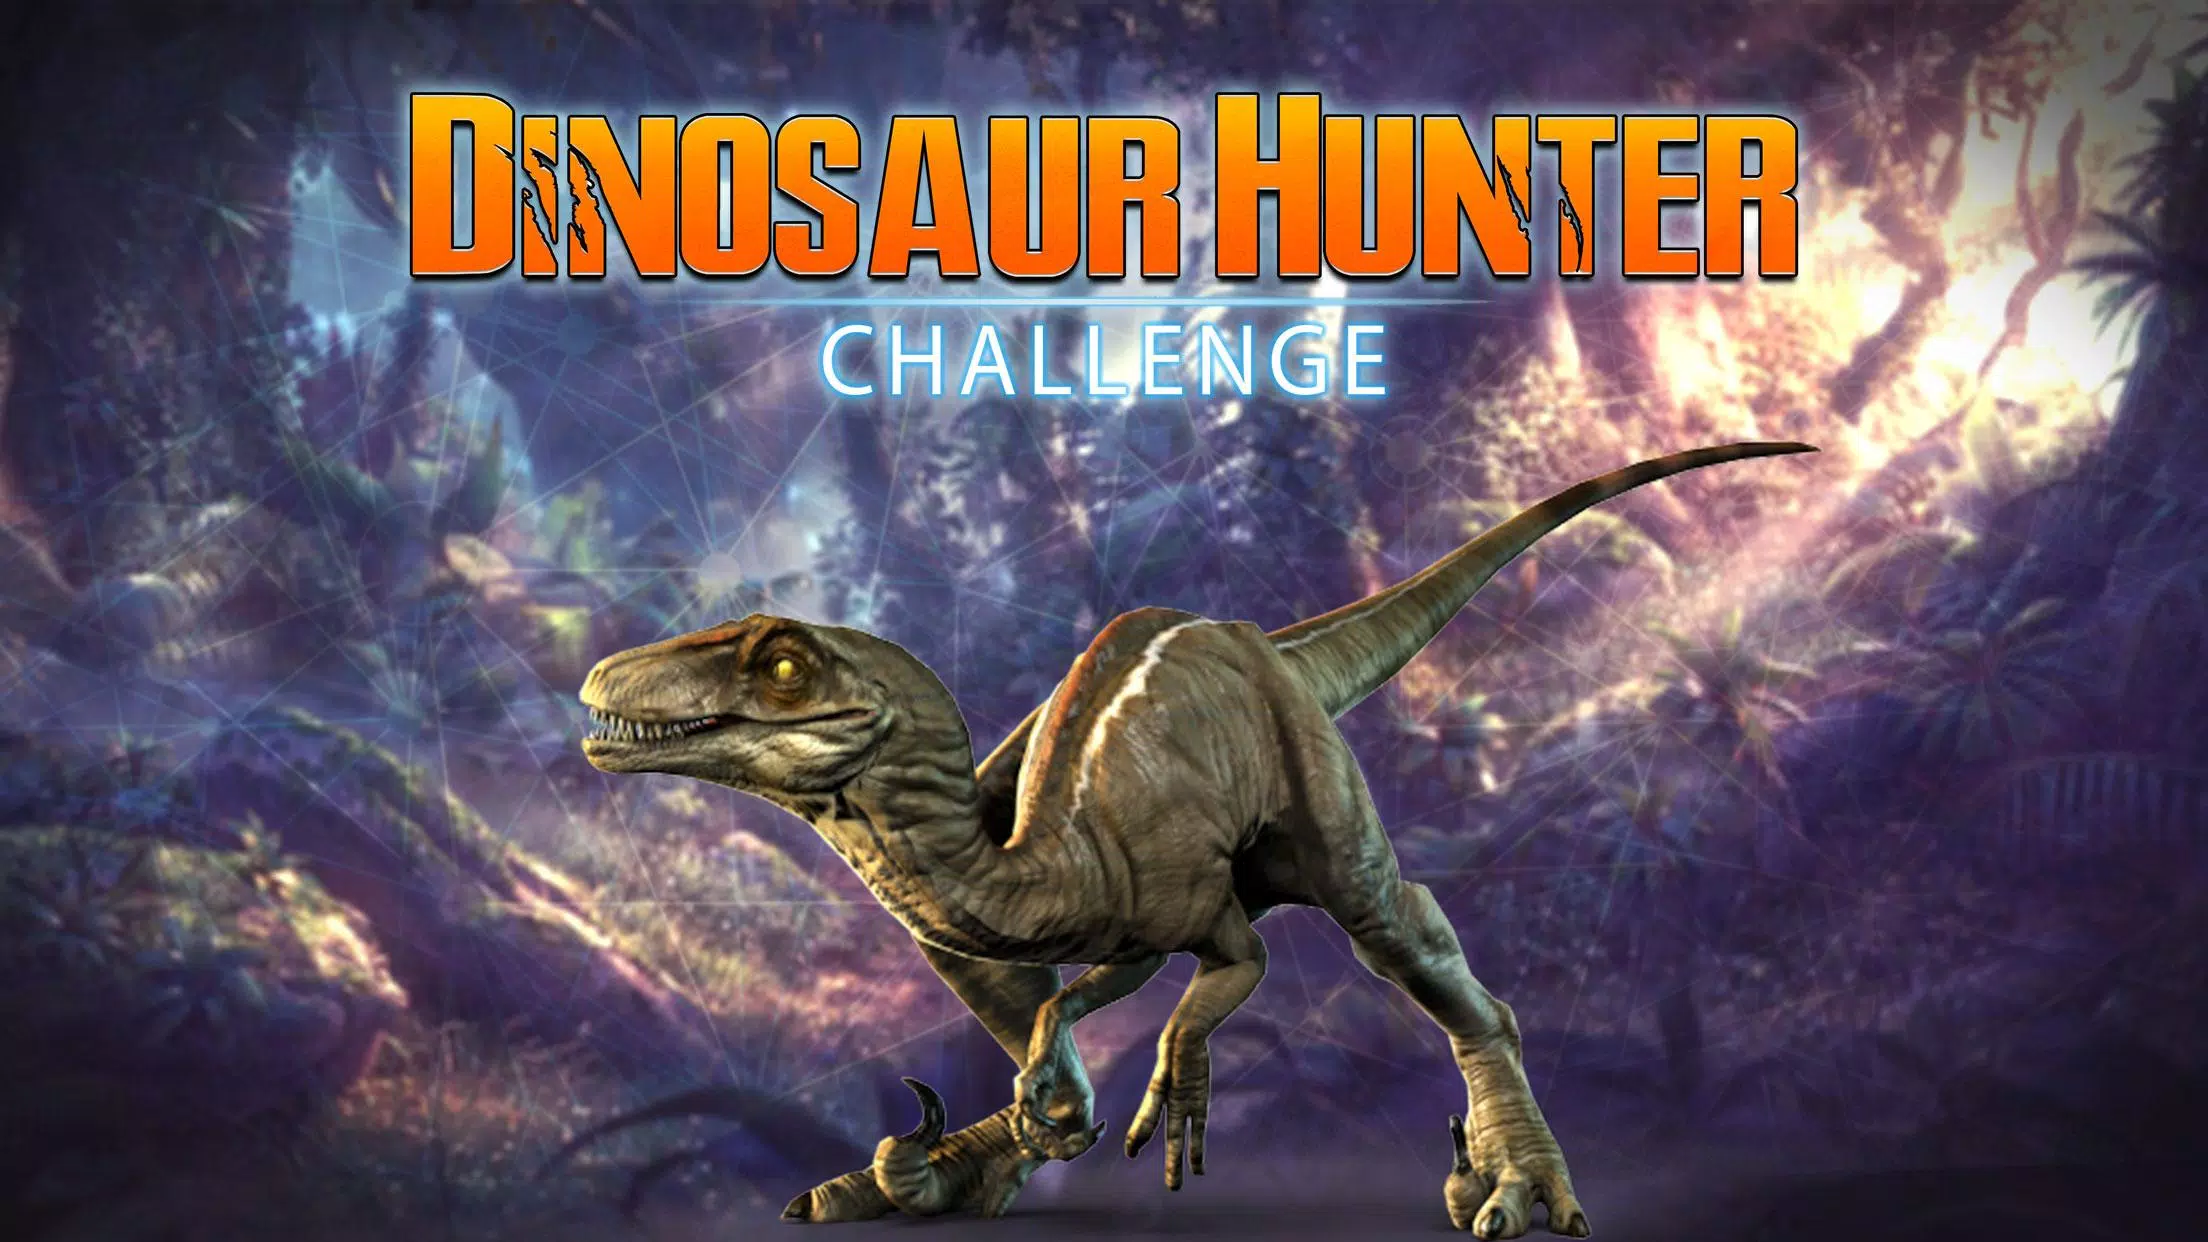 Dino Hunter, incrível jogo de caçar dinossauros chega aos dispositivos  Android e iOS 